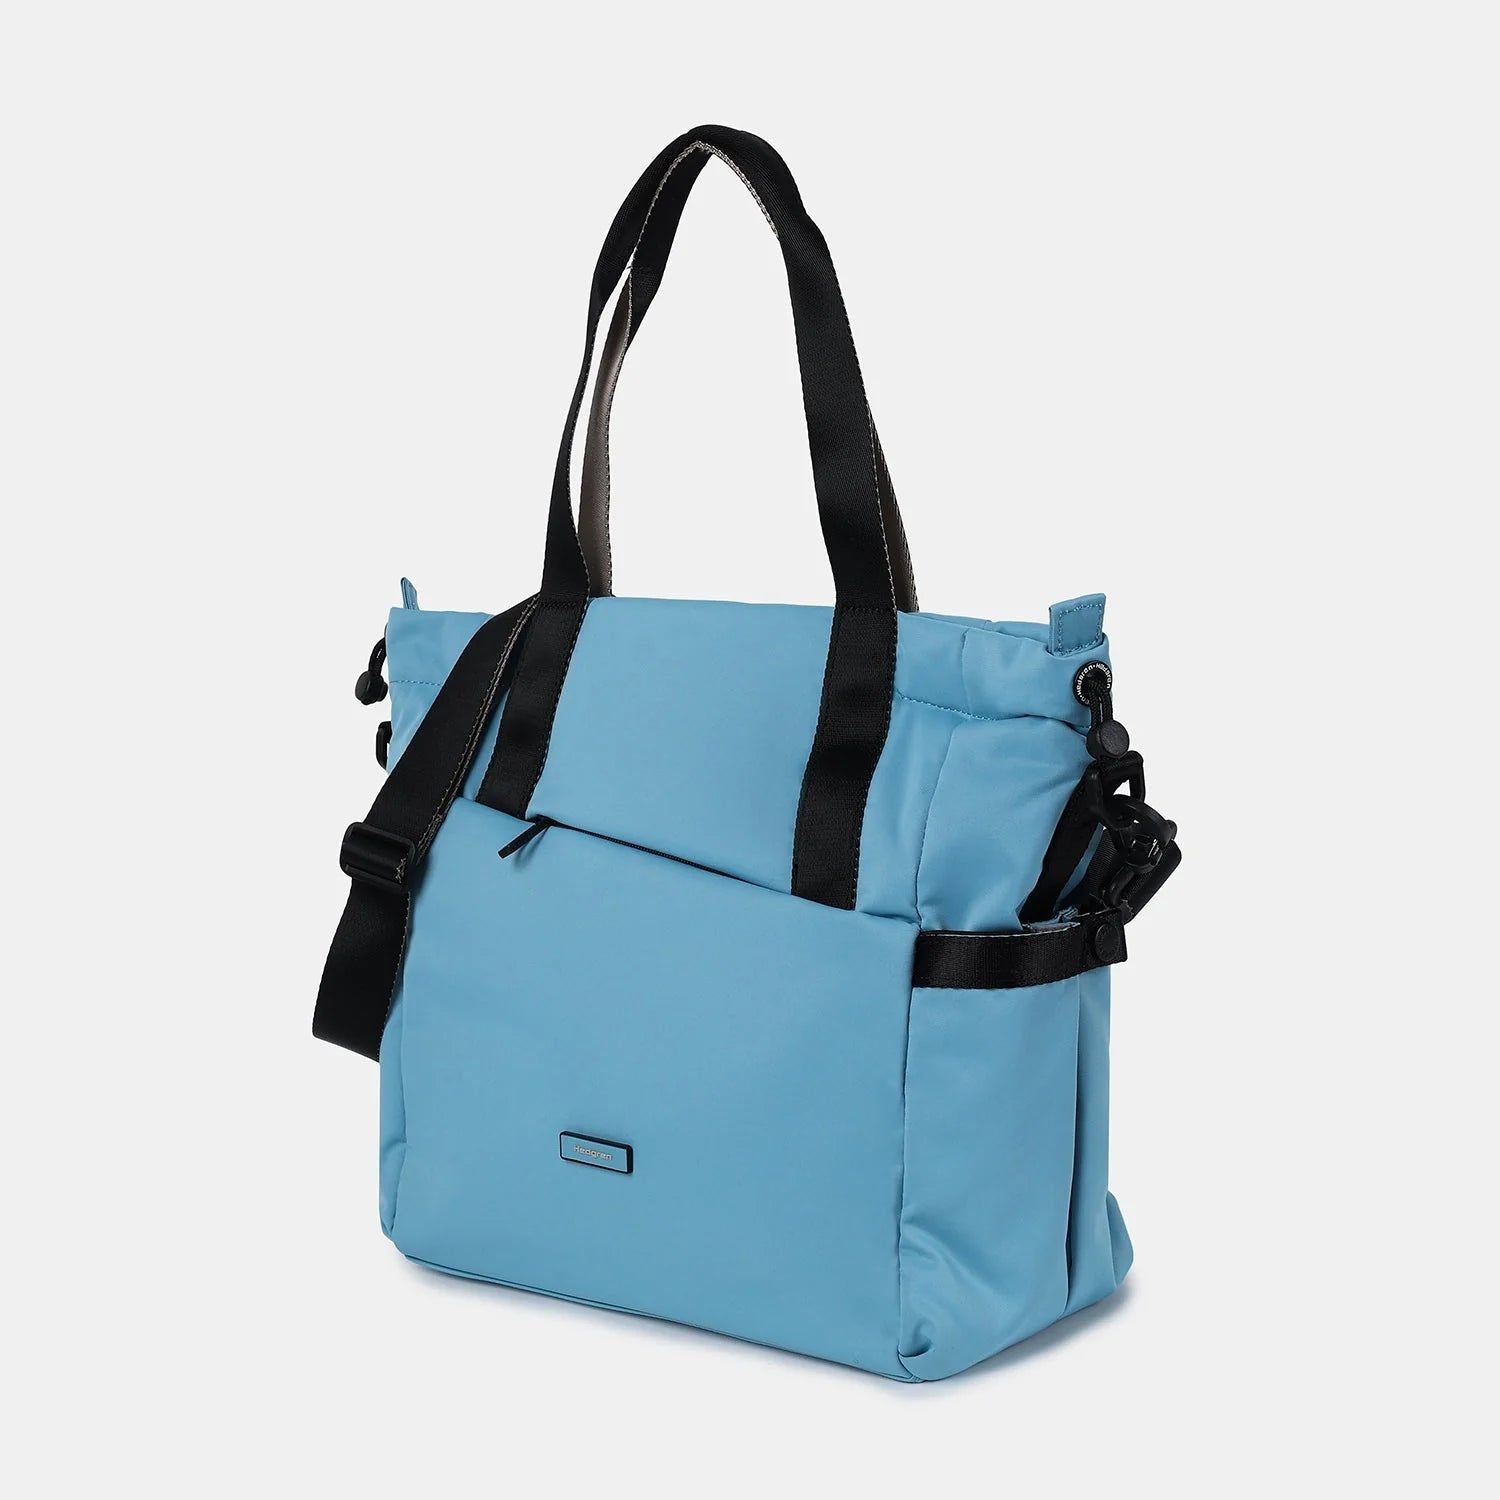 Hedgren GALACTIC Shoulder Bag / Tote Bag - rainbowbags